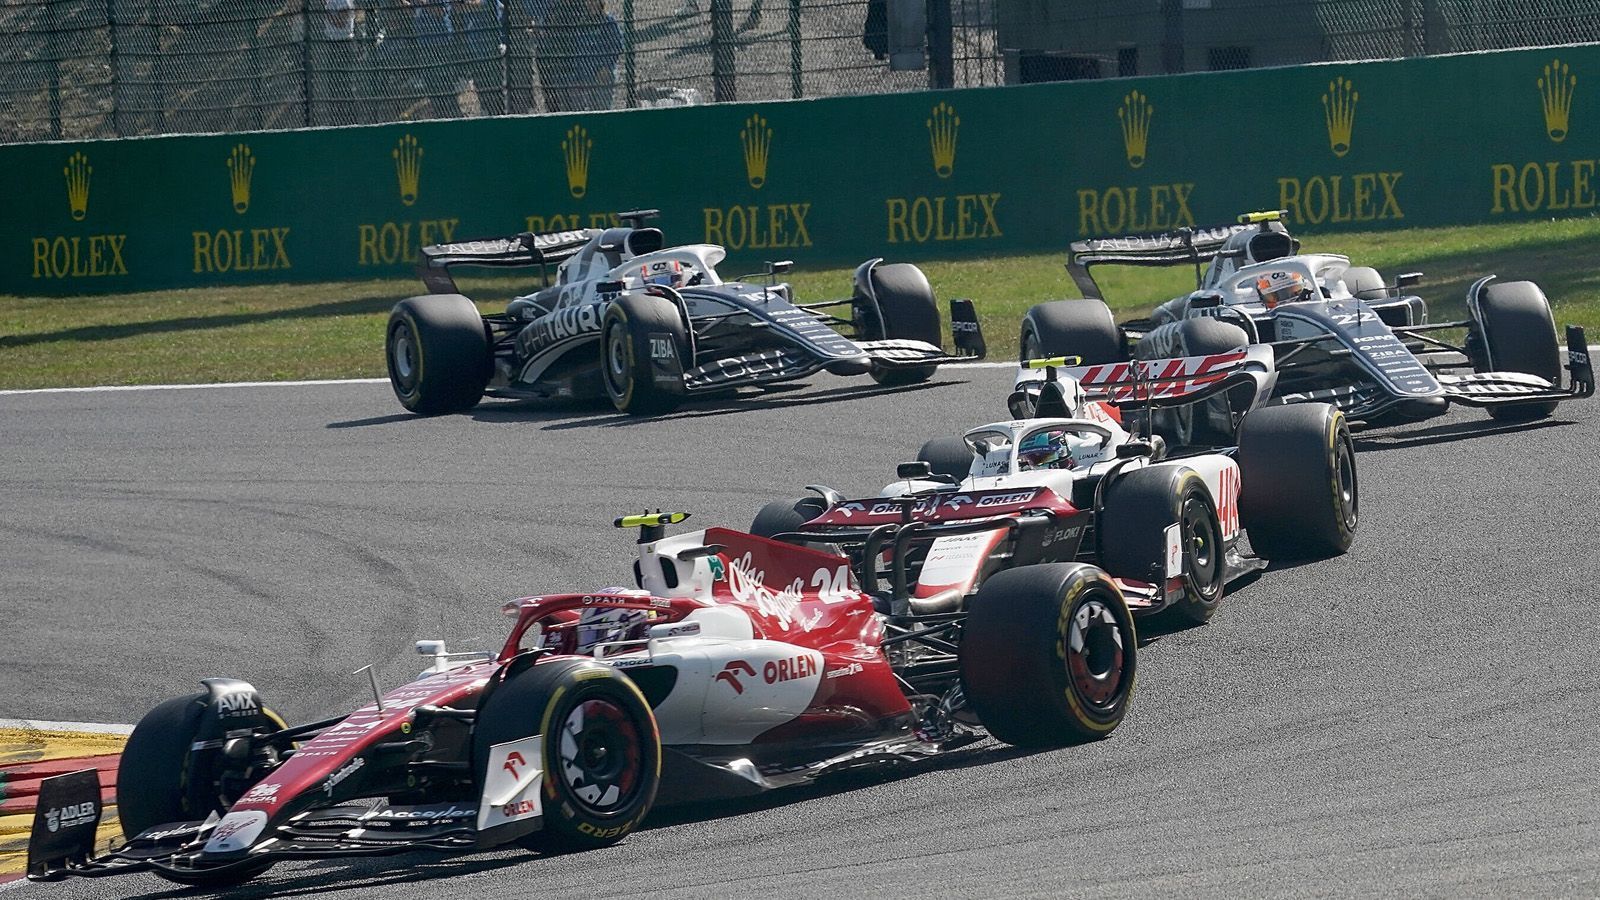 
                <strong>Vier Teams kämpfen um Platz 6 in der Konstrukteurswertung</strong><br>
                Für Außenstehende mag es wenig spannend erscheinen, wer sich Platz 6 in der Konstrukteurswertung schnappt. Tatsächlich aber geht es dabei um eine Menge Geld, welches je nach Endstand an die Teams verteilt wird. Mit Alfa Romeo (52 Punkte), Aston Martin (51 Punkte), Haas (38 Punkte) und AlphaTauri (36 Punkte) sind die Teams zwischen Rang sechs und neun innerhalb von 16 Punkten zusammengerückt. Lediglich Williams ist mit acht Punkten völlig abgeschlagen.
              